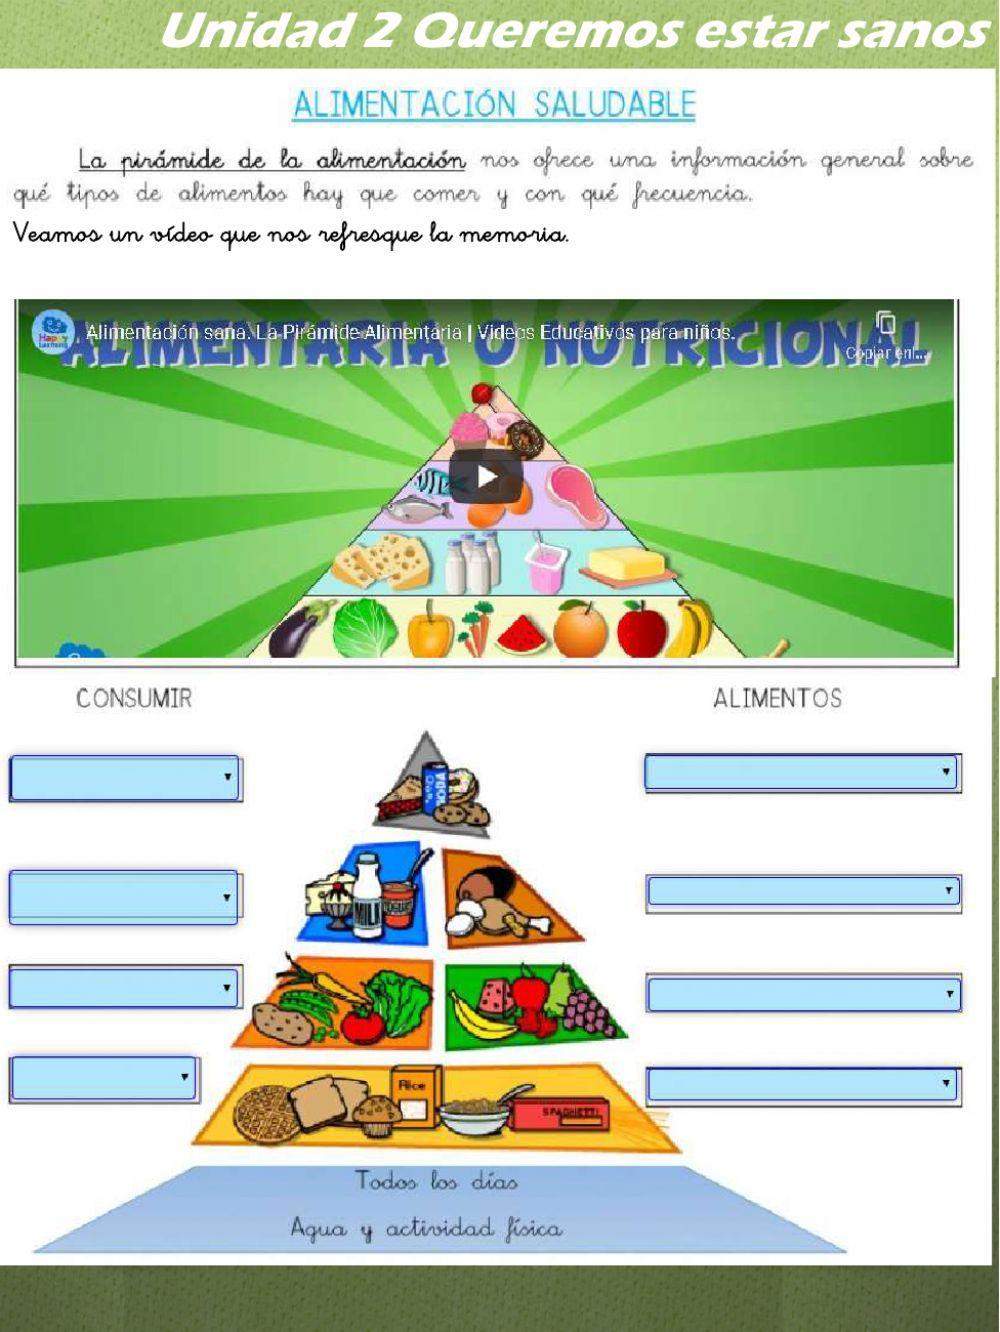 La pirámide de los alimentos